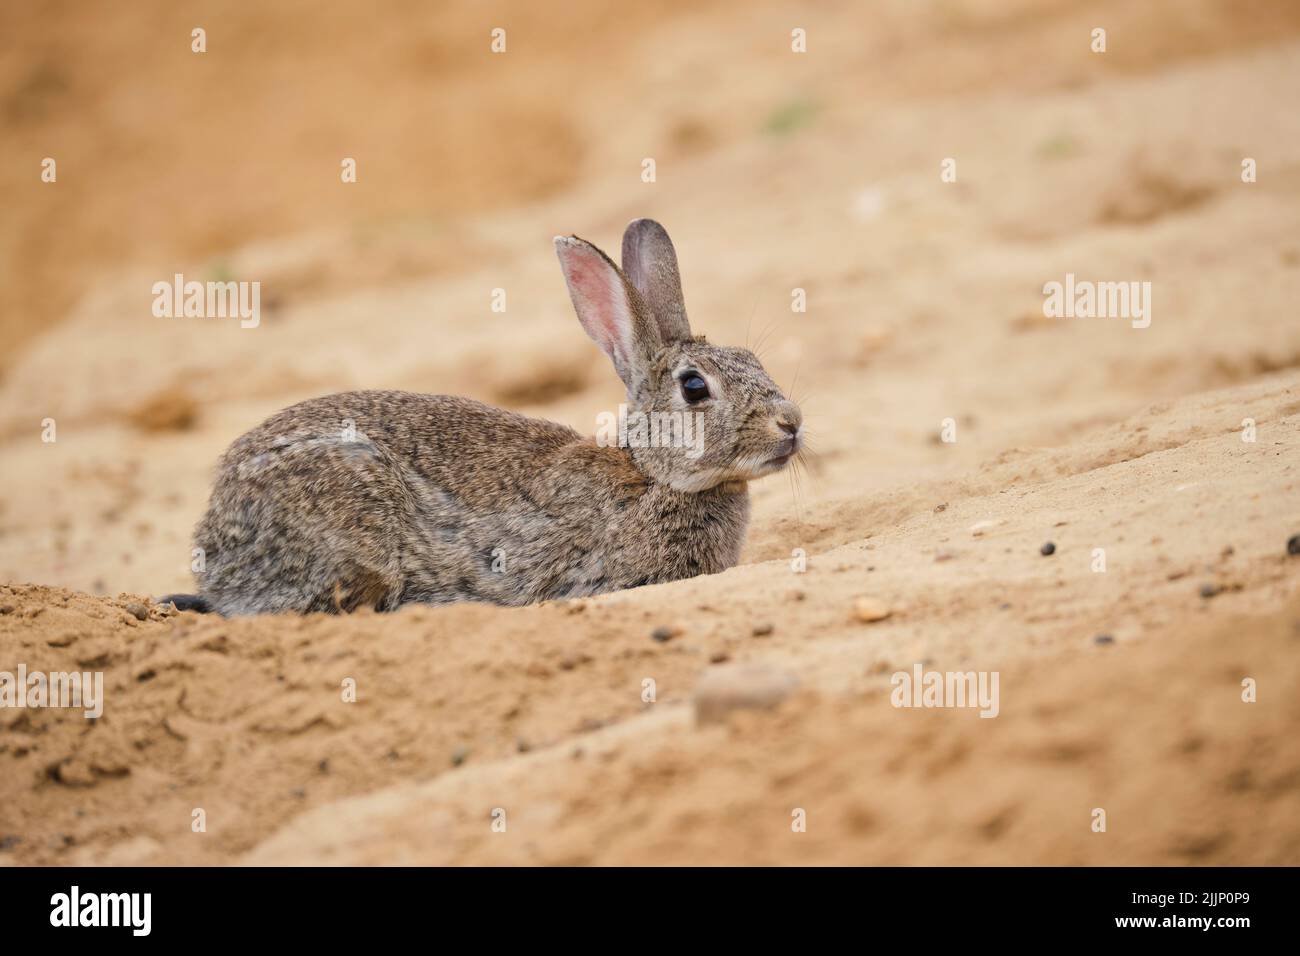 Wary sylvilagus audubonii coniglio guardare lontano e alla ricerca di pericolo, mentre si trova su sabbia in deserto Foto Stock